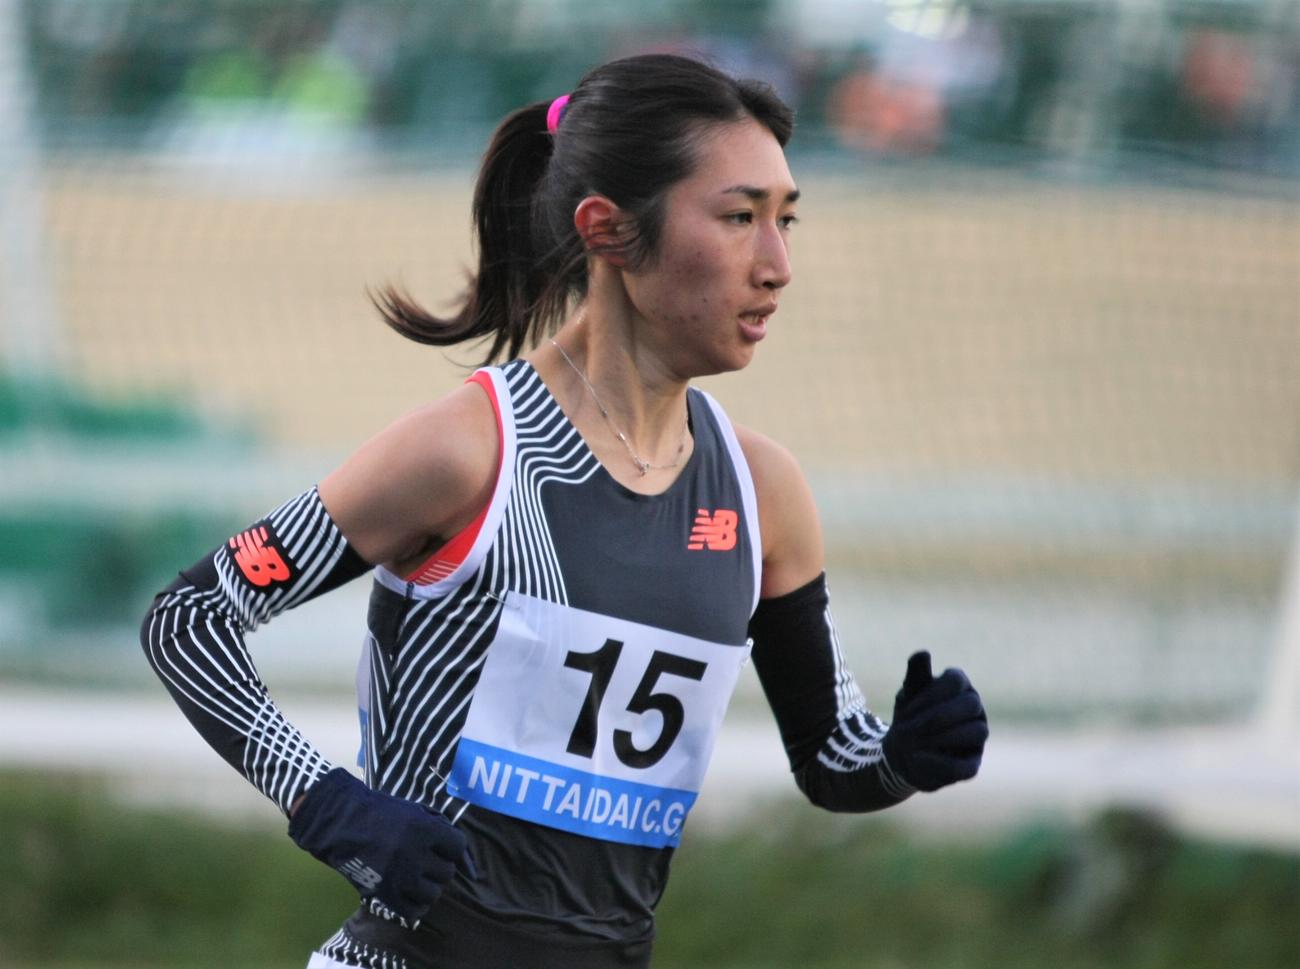 日体大長距離競技会NCG女子5000メートルに出場した田中（撮影・藤塚大輔）